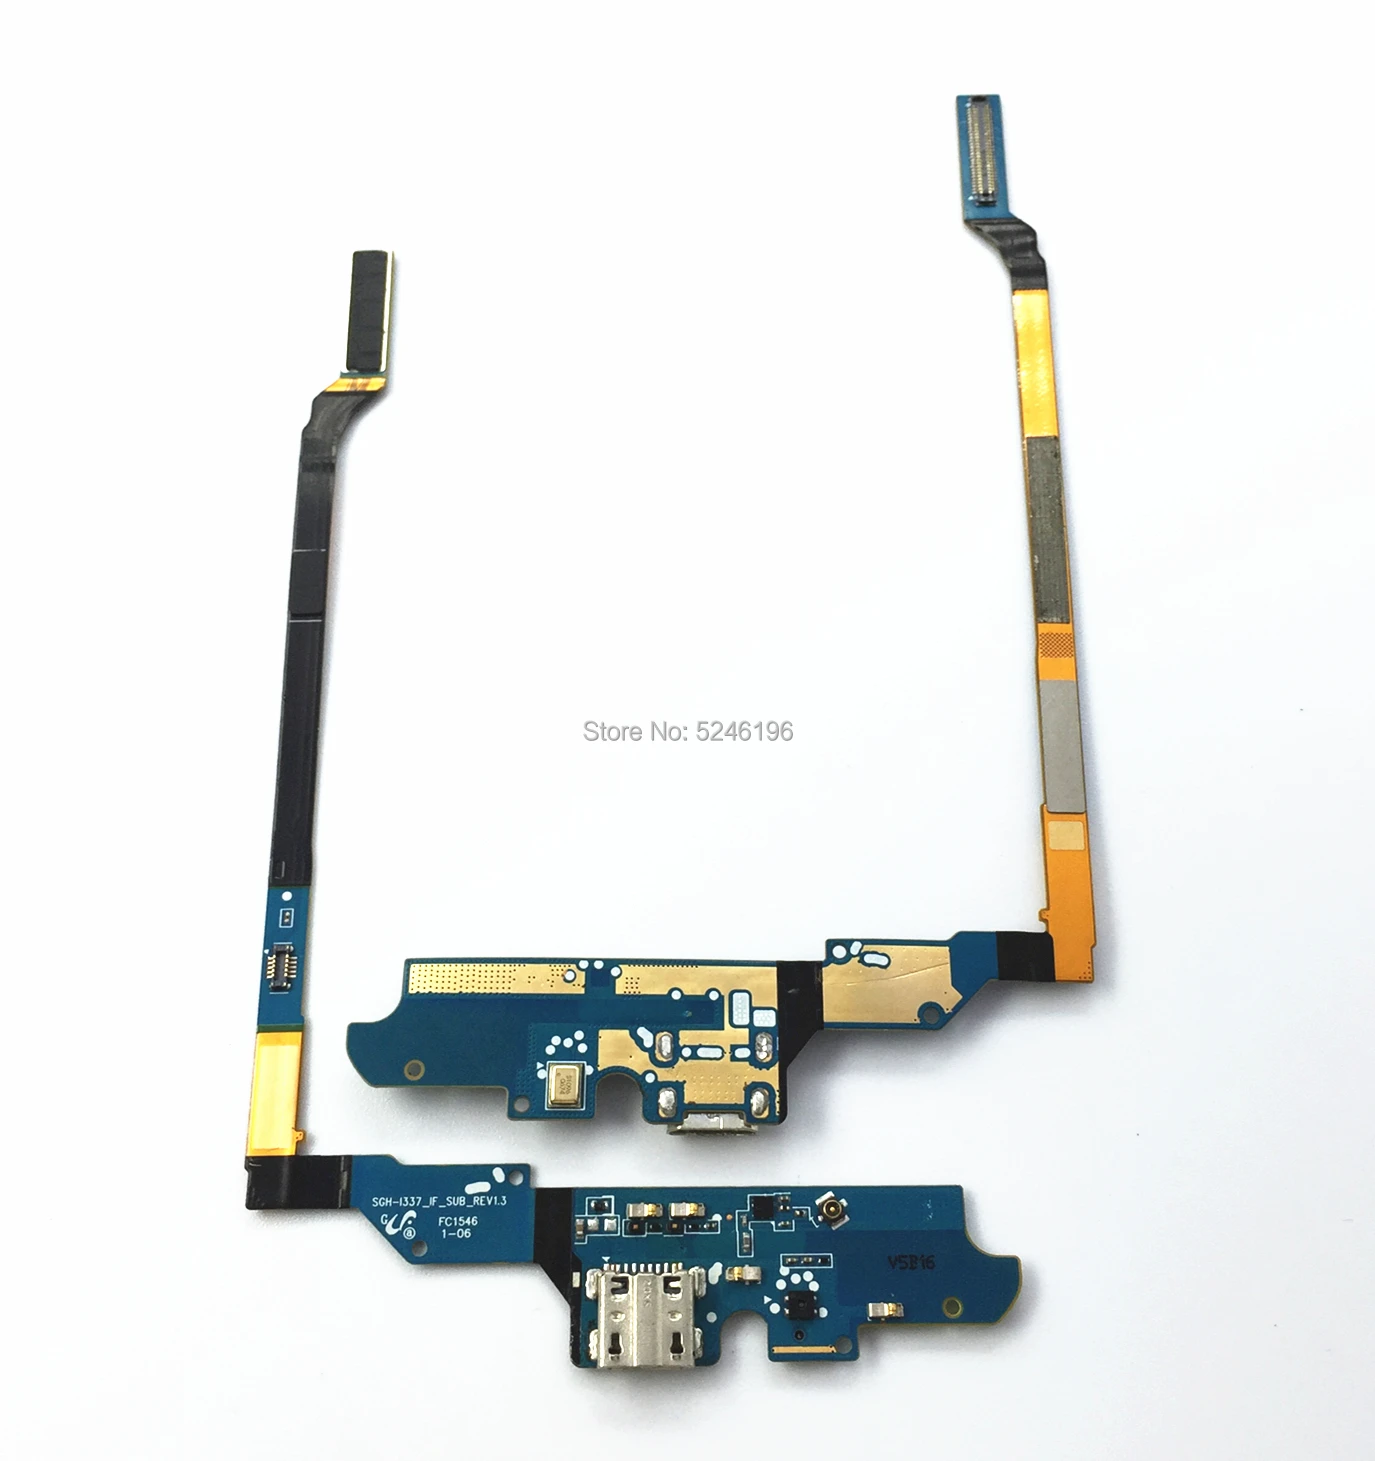 1 шт., оригинальная USB зарядная плата, разъем для зарядки, док-станция, гибкий кабель для samsung Galaxy S4 i9500 M919 I337 i9505, запчасти для микрофона